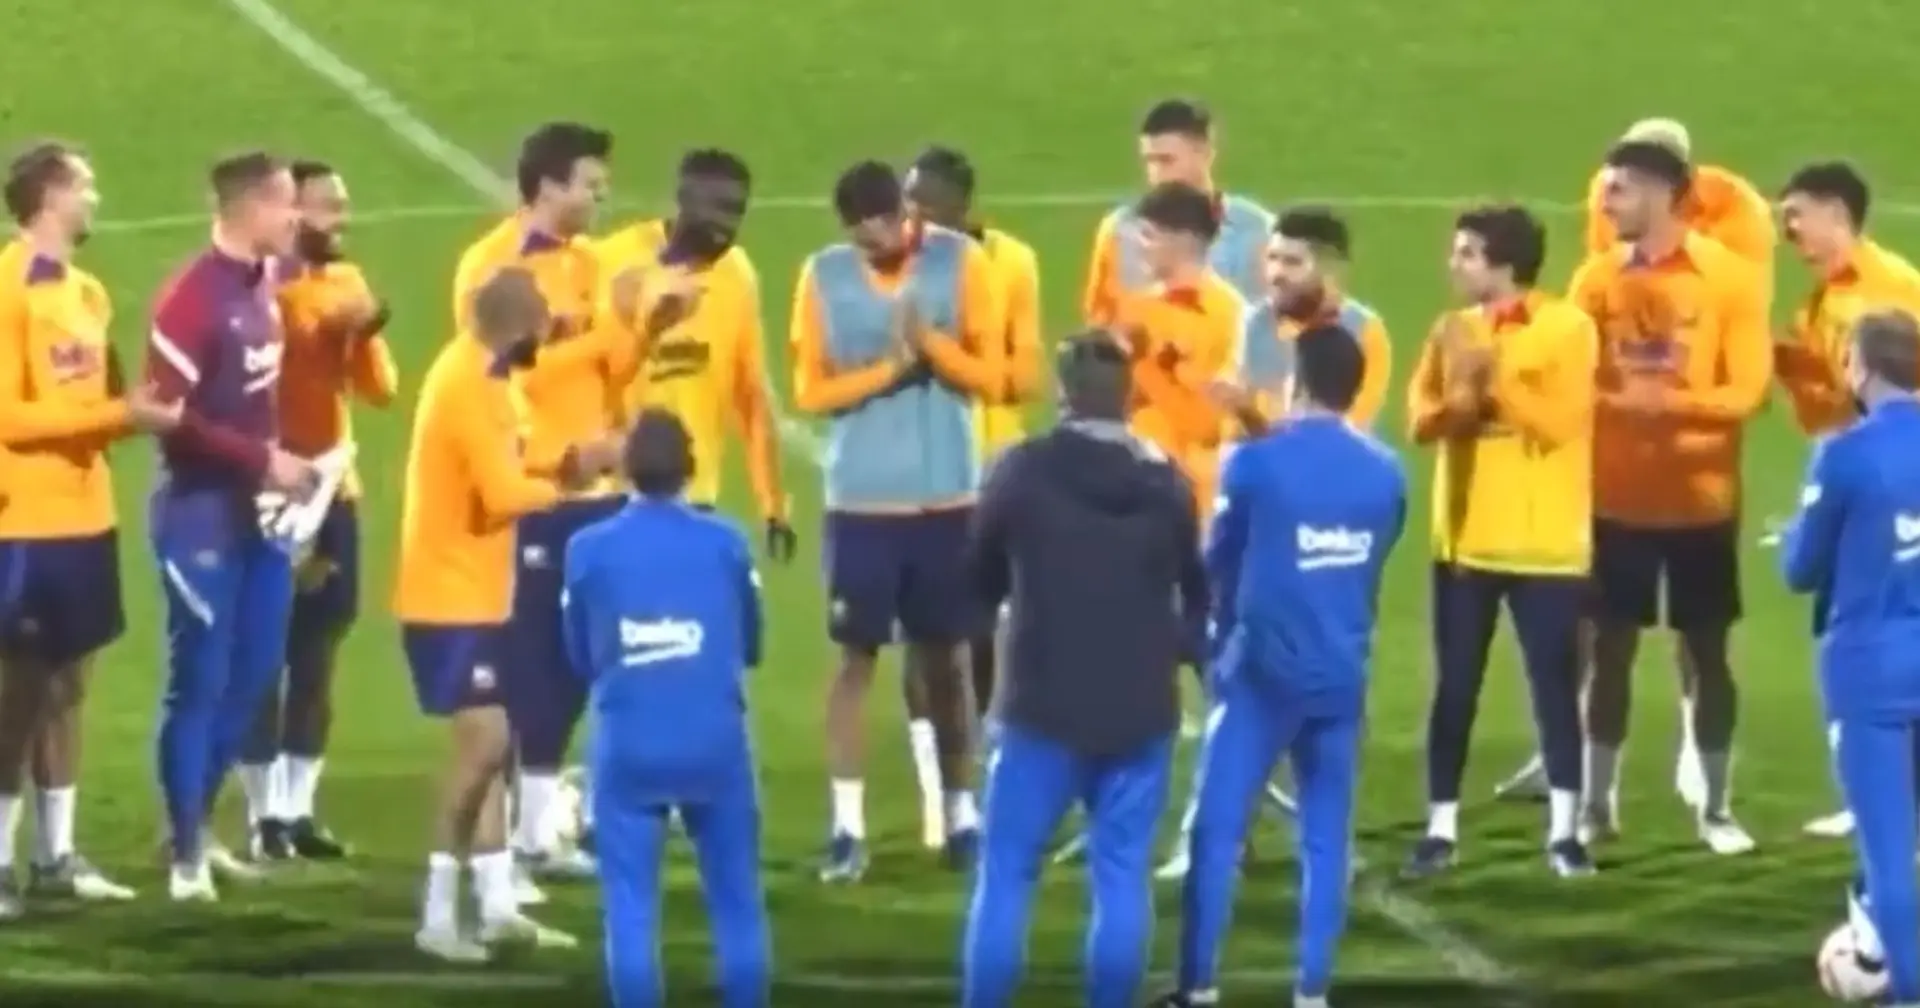 Visto: los jugadores del Barça aplauden a Umtiti durante un entrenamiento tras aceptar un recorte salarial (video)